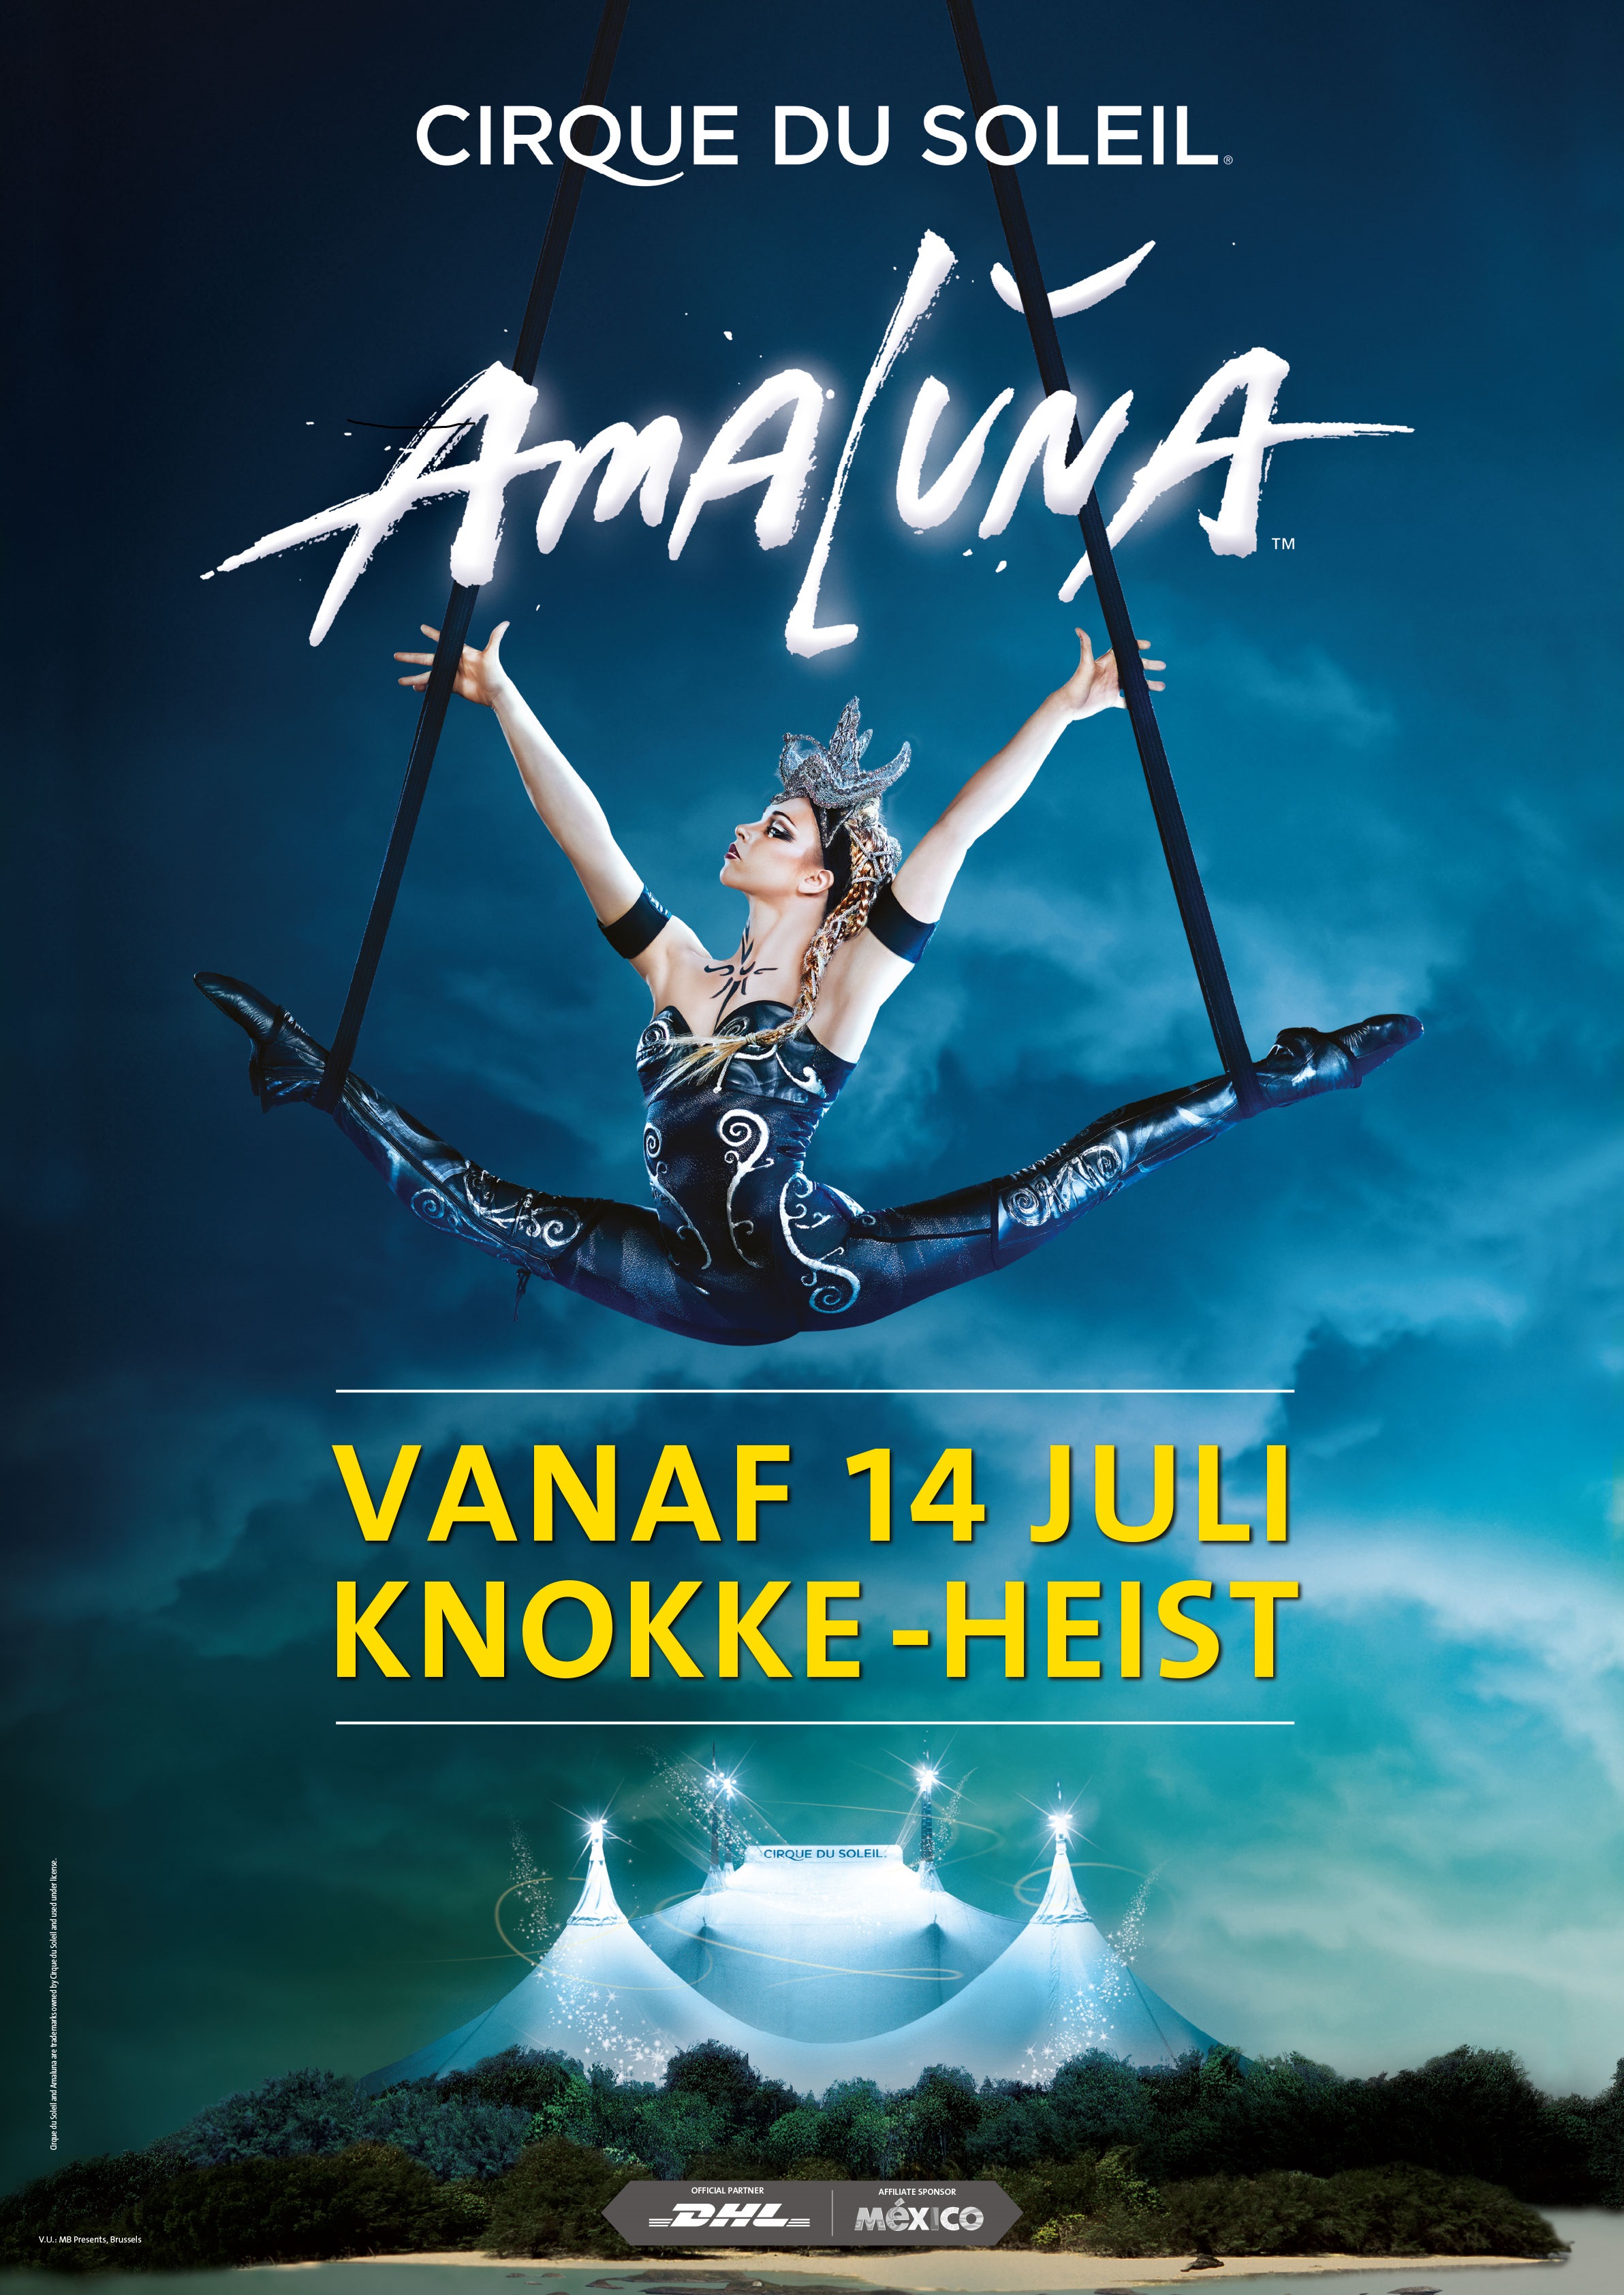 Cirque du Soleil �� Knokke-Heist avec son spectacle Amaluna.